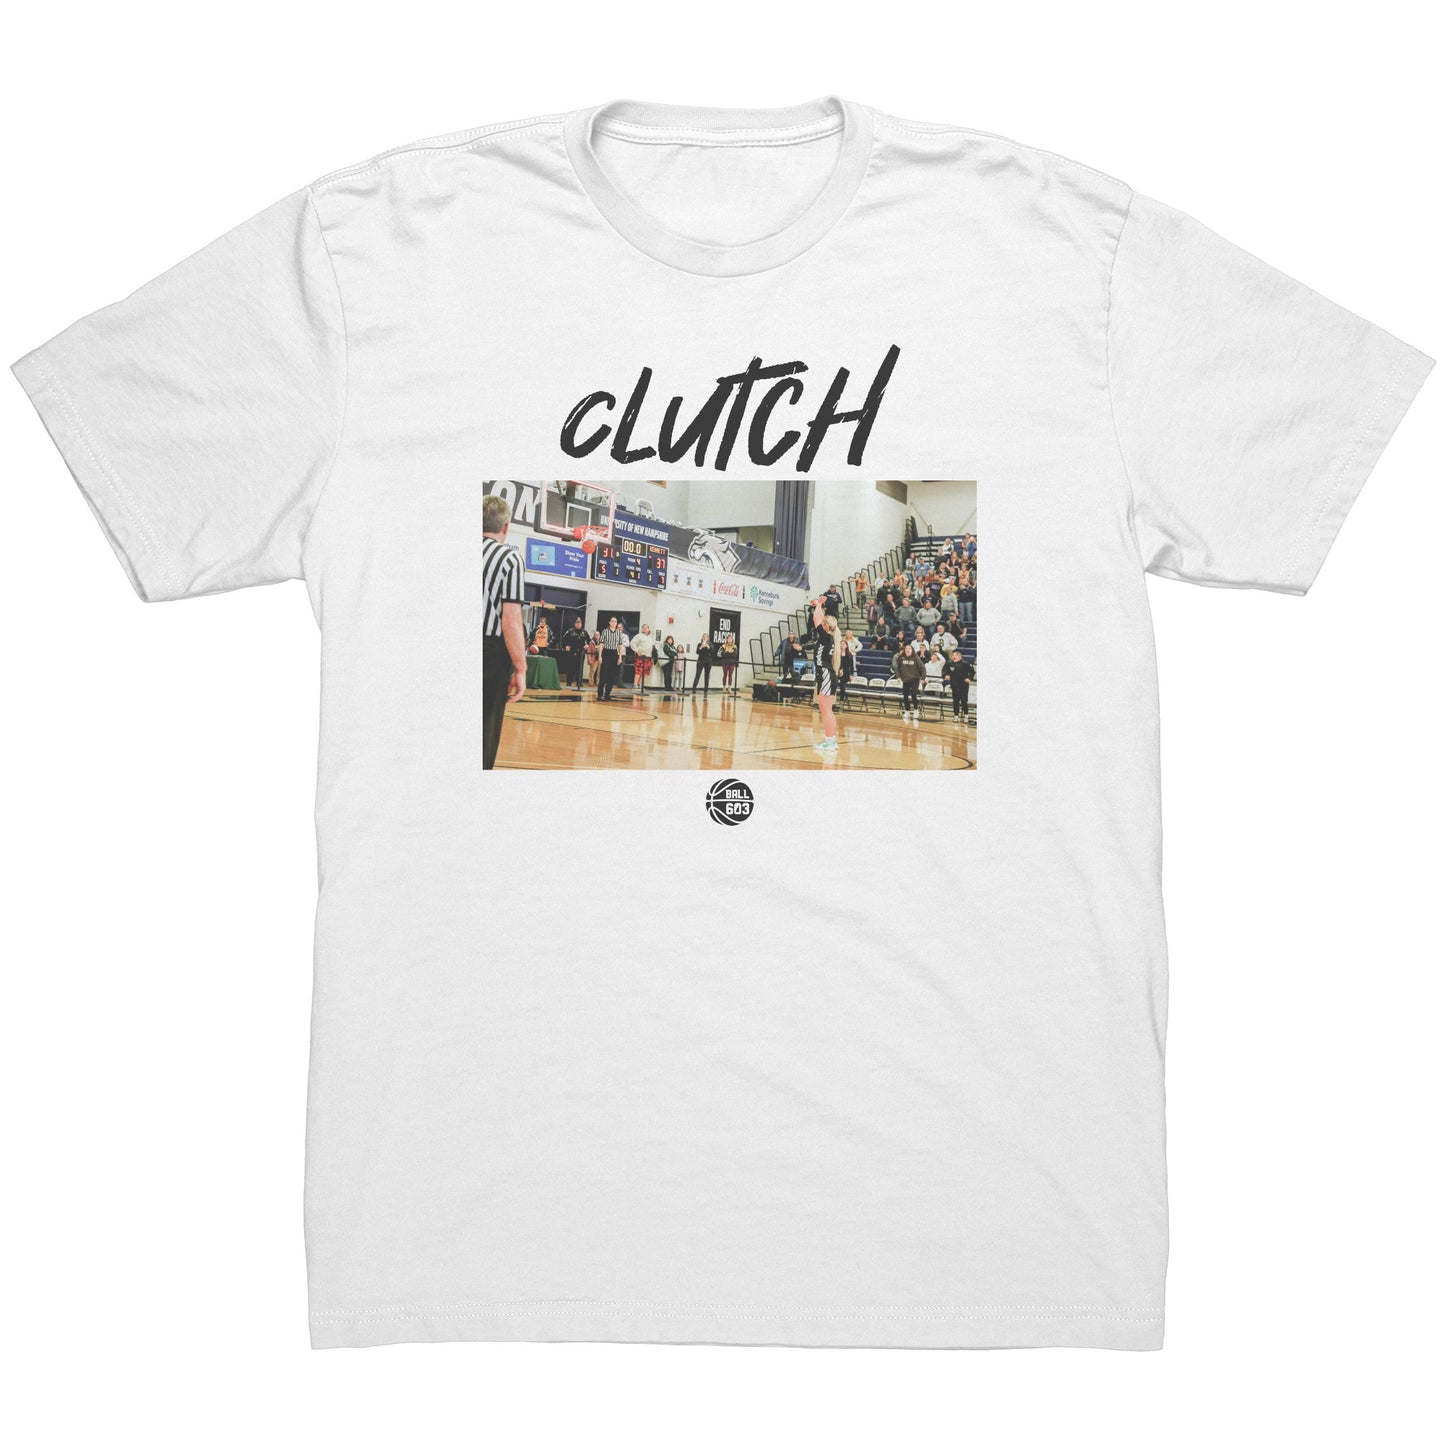 Clutch: T-Shirt